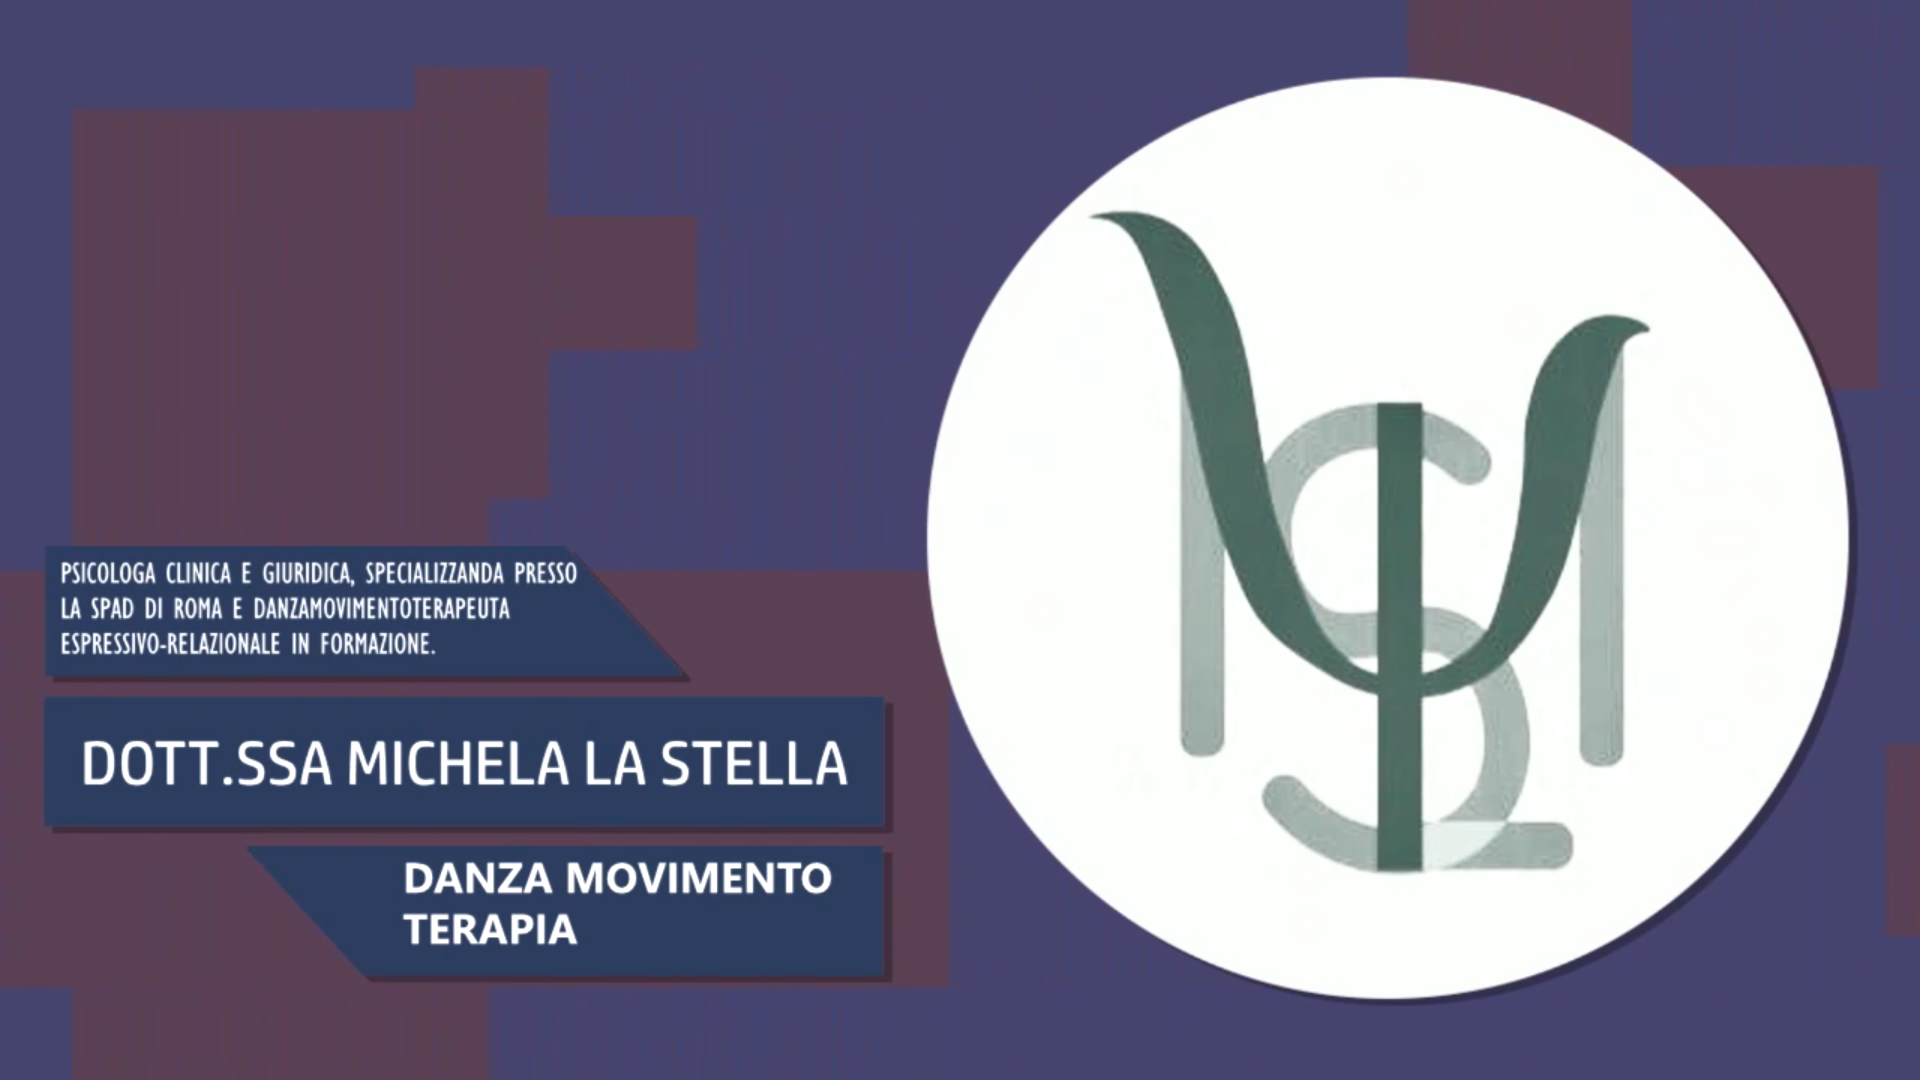 Intervista alla Dott.ssa Michela La Stella – Danza movimento terapia